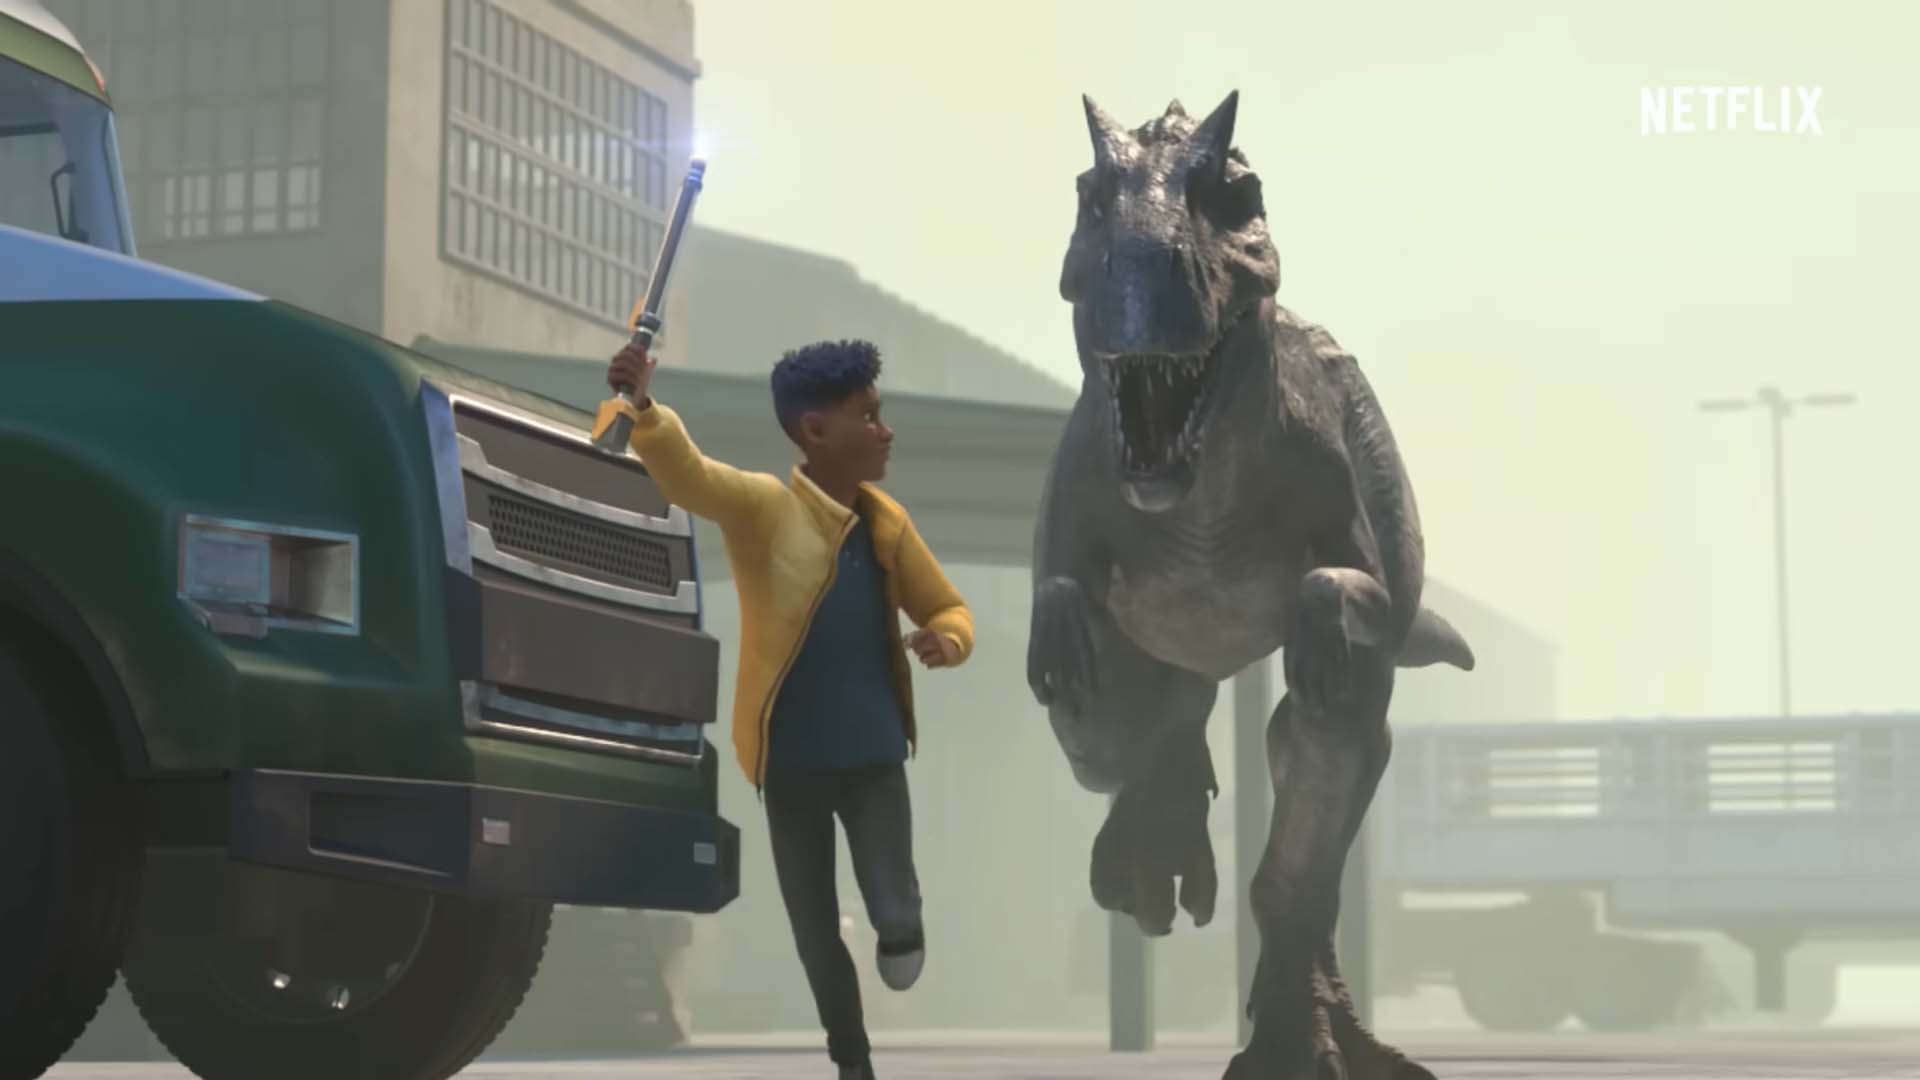 Quando esce Jurassic World - Teoria del caos, la nuova serie animata?